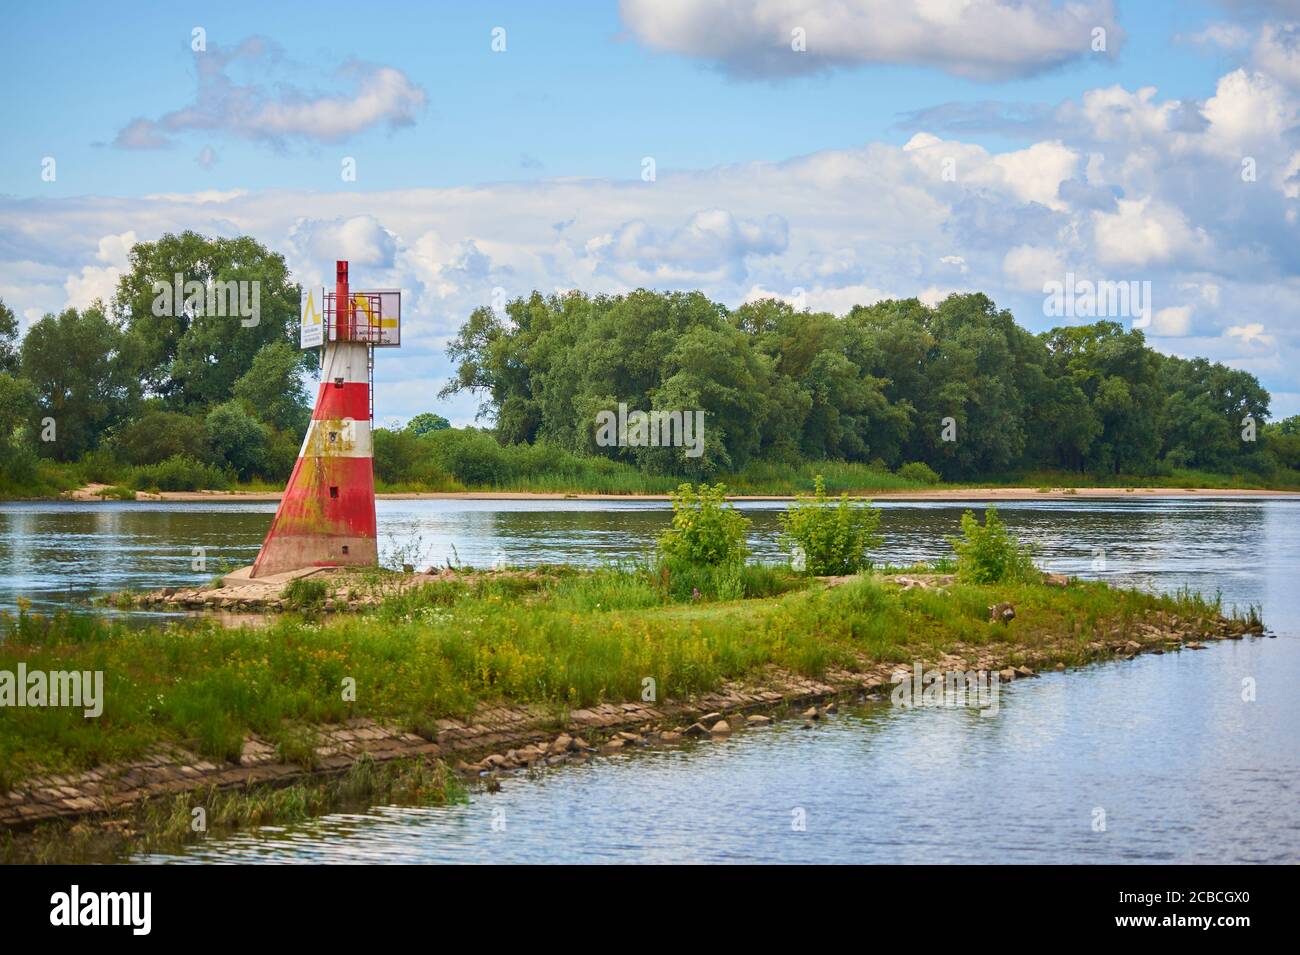 Der Leuchtturm am Eingang zum Flusshafen von Boizenburg / Elbe, Norddeutschland Stockfoto